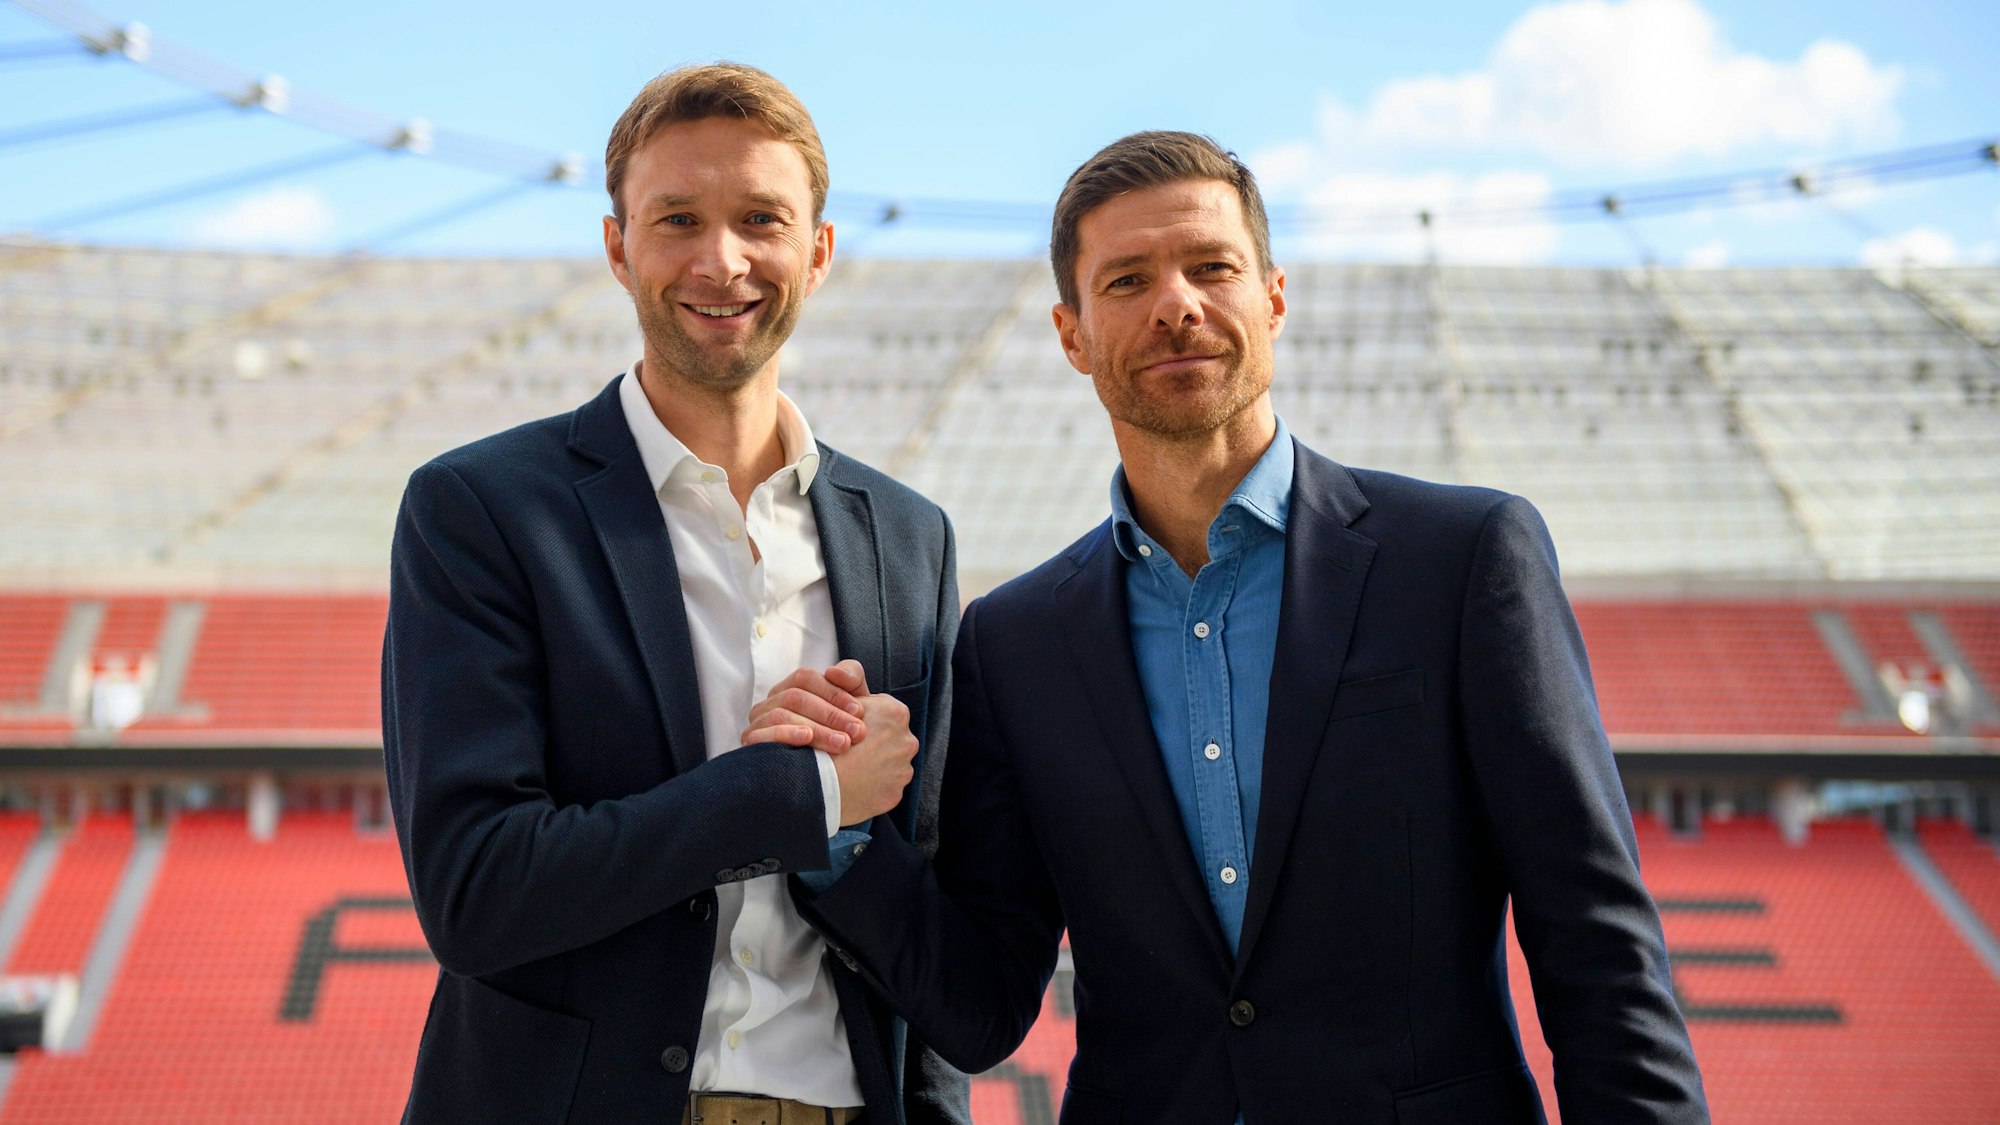 Leverkusens Sportdirektor Simon Rolfes und Leverkusens Cheftrainer Xabi Alonso auf der Tribüne im Stadion.